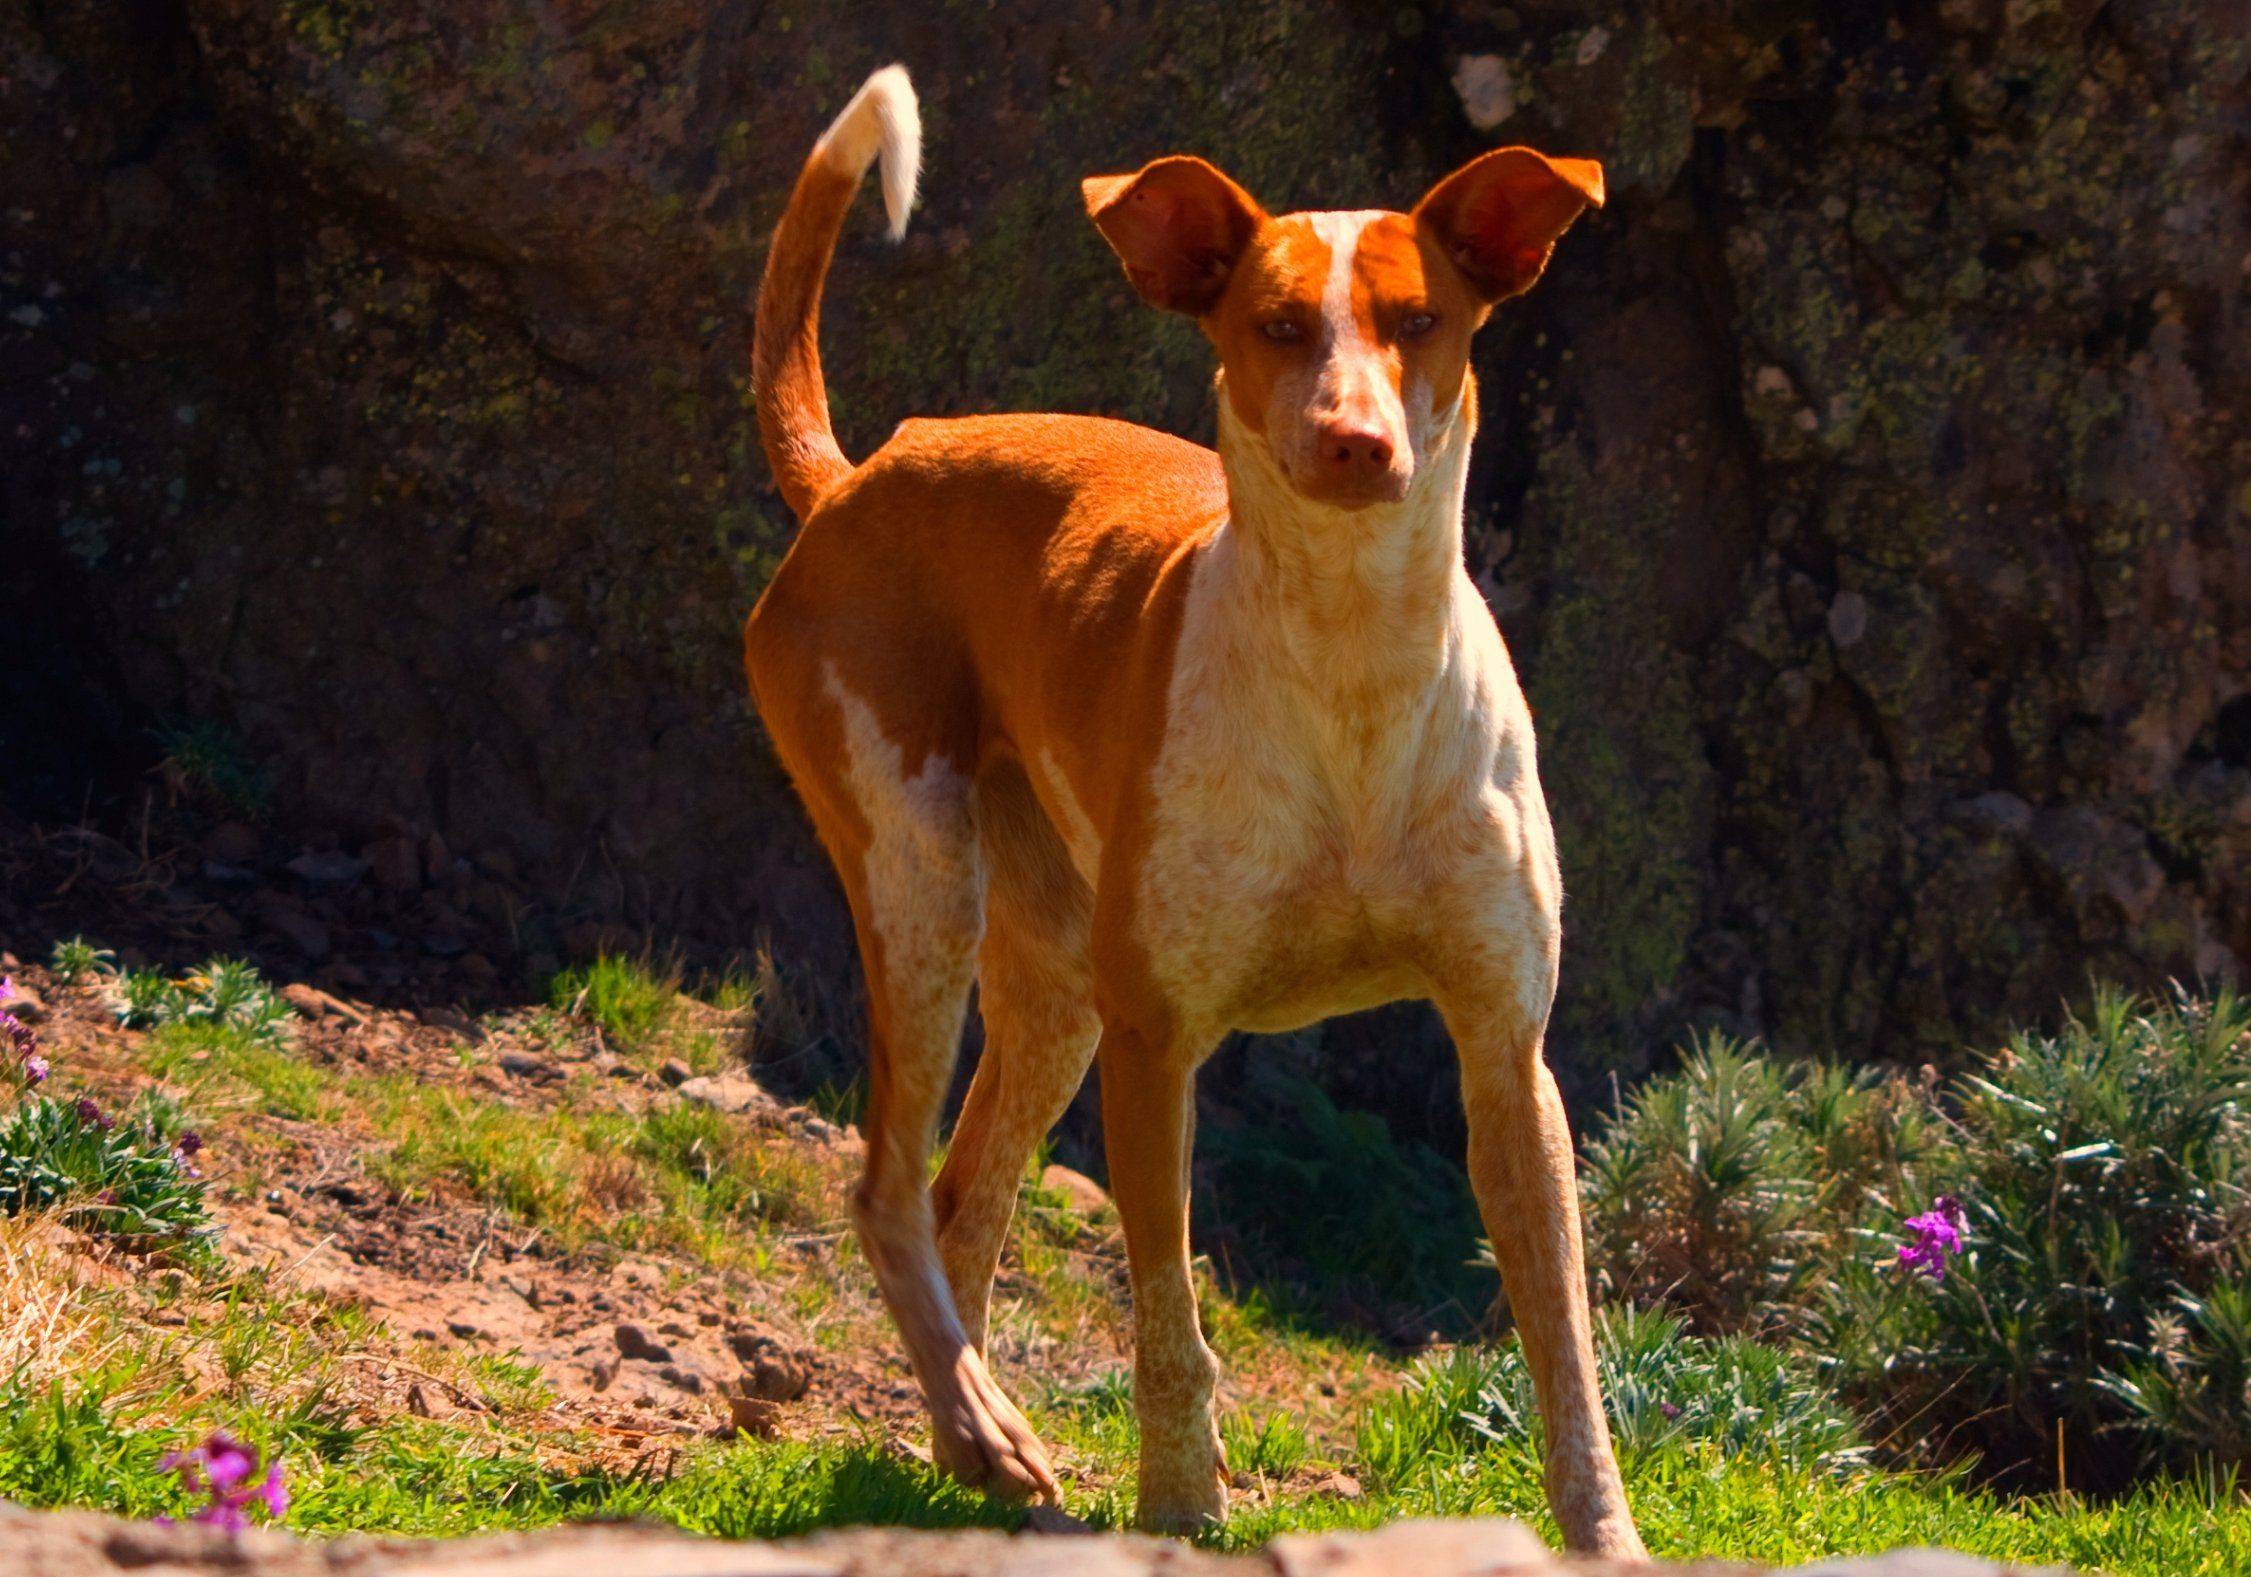 Описание породы собак канарский дог с отзывами владельцев и фото